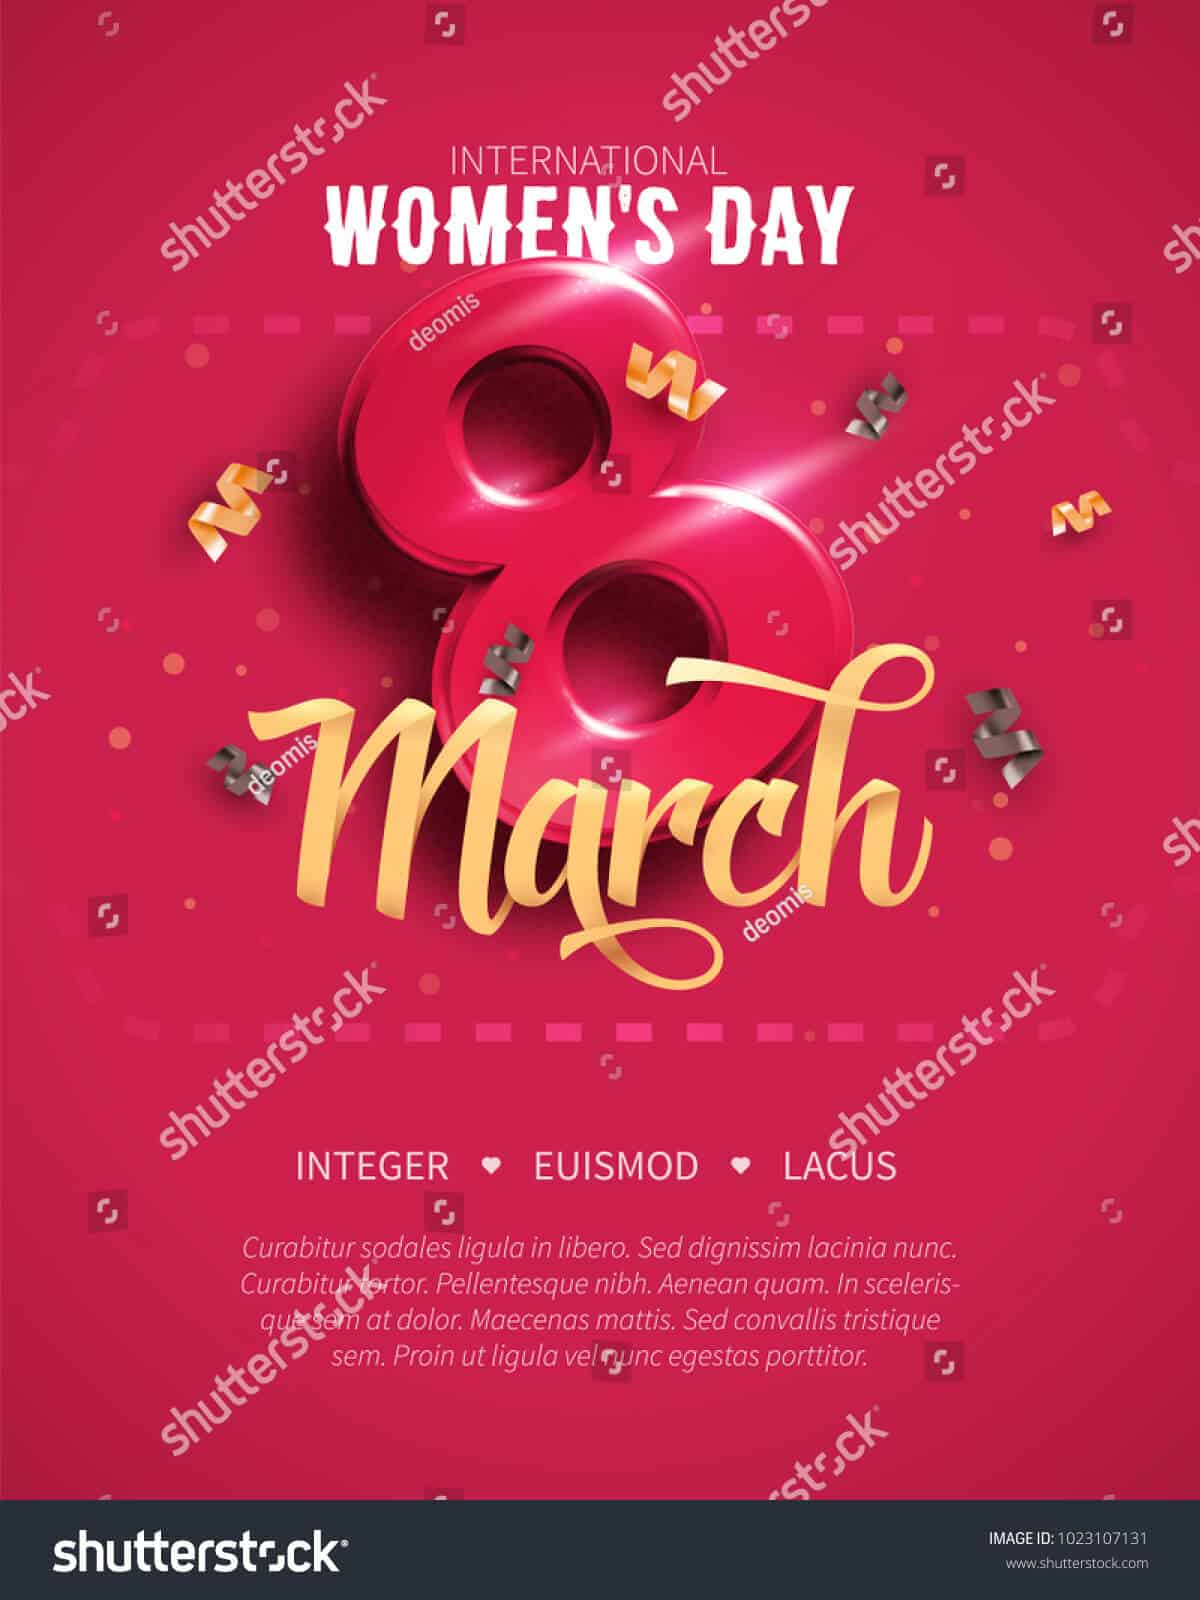 440 ngàn hình ảnh ngày quốc tế phụ nữ 8/3 chất lượng cao trên Shutterstock